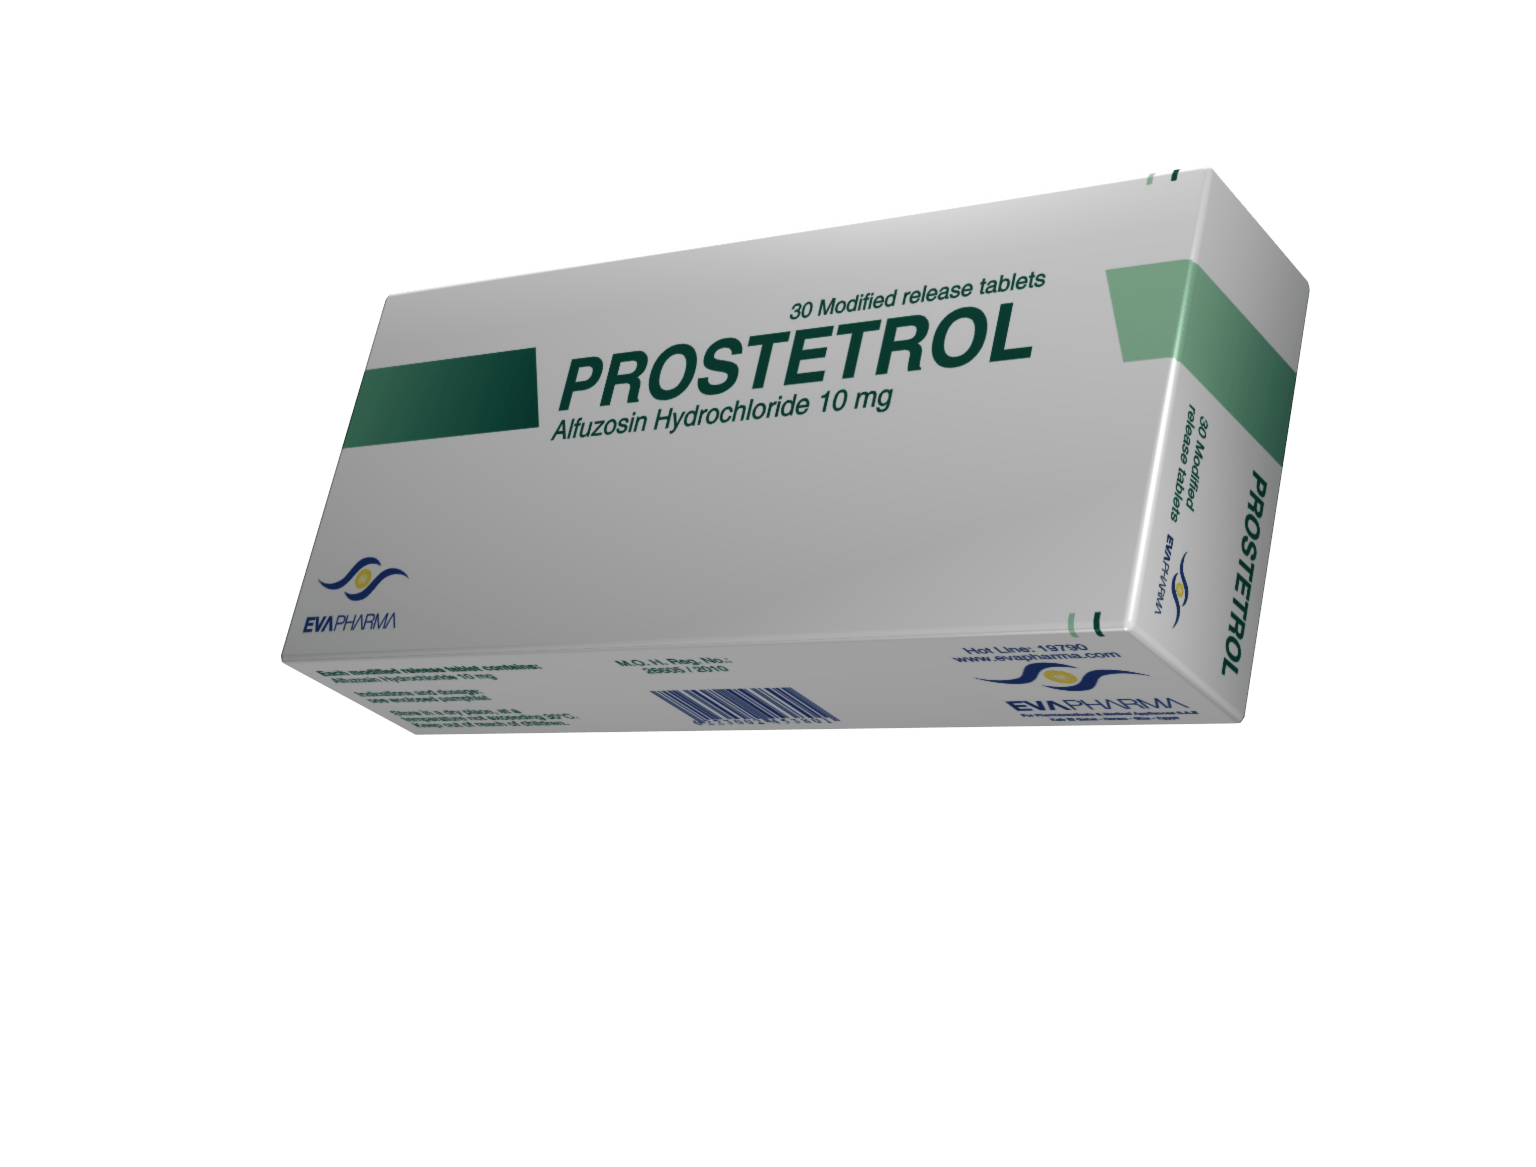 استخدام دواء بروستانورم Prostanorm لعلاج البروستاتا والآثار الجانبية له